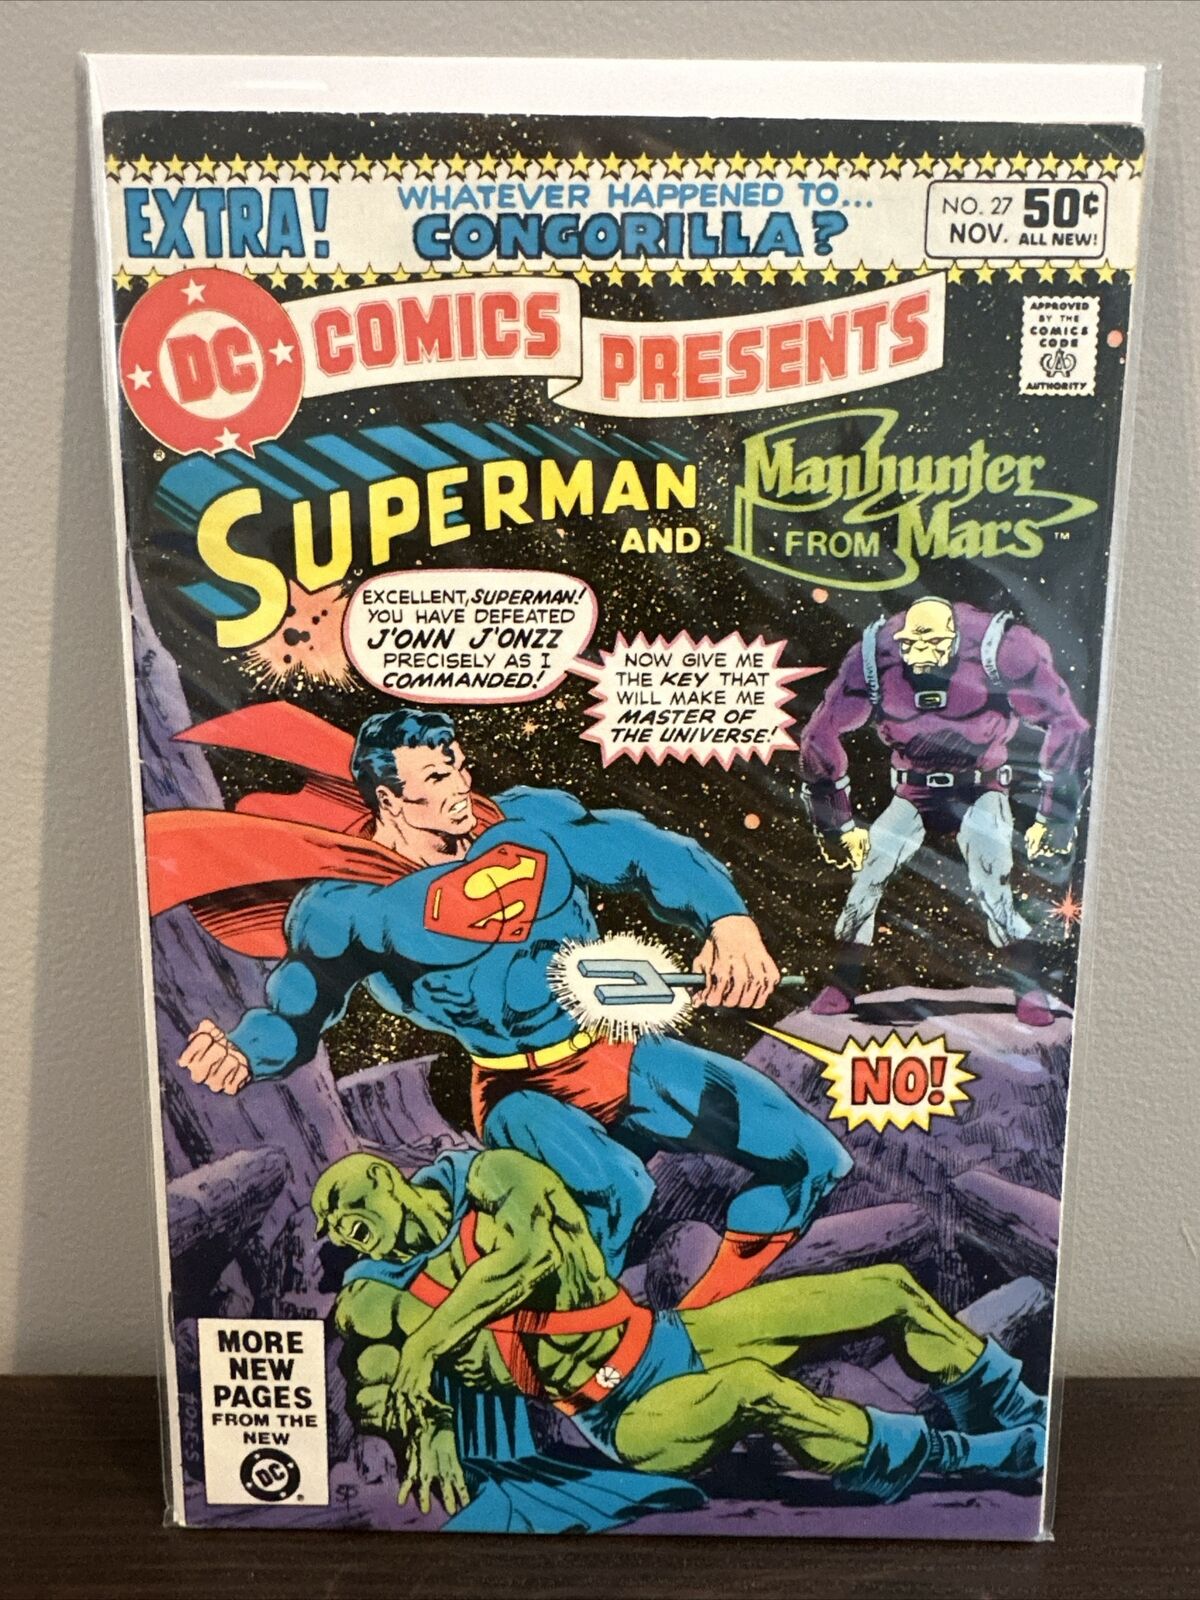 Superman and Manhunter from Mars Comic book NO. 27 November 1980